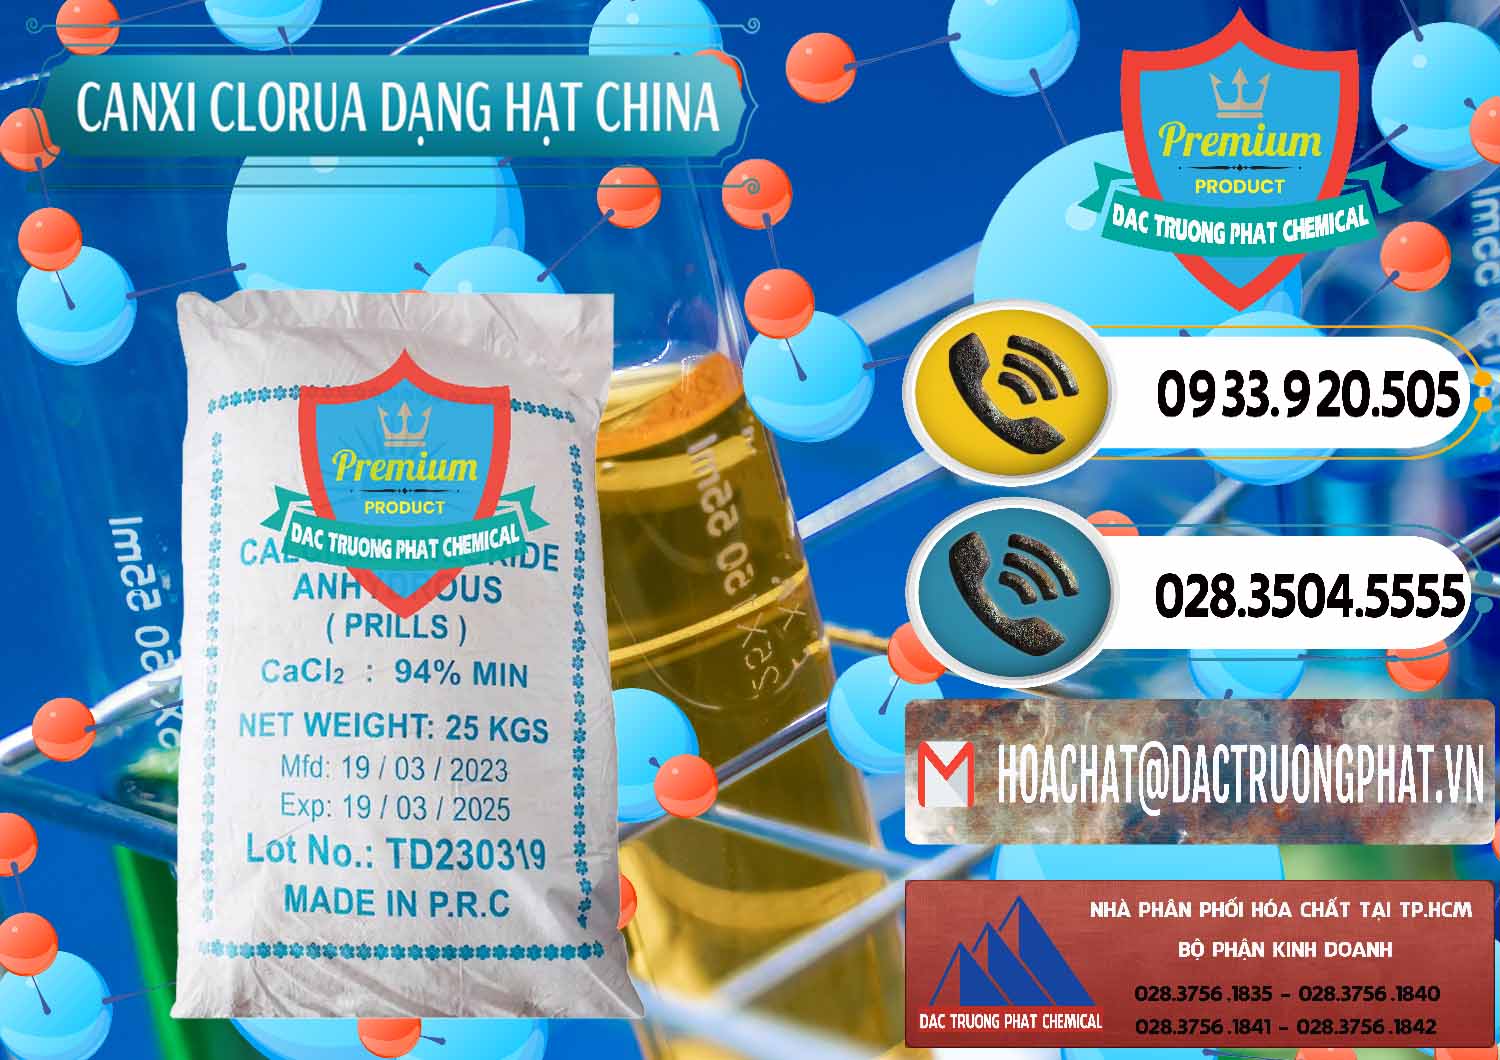 Cty chuyên bán và cung ứng CaCl2 – Canxi Clorua 94% Dạng Hạt Trung Quốc China - 0373 - Đơn vị phân phối và bán hóa chất tại TP.HCM - hoachatdetnhuom.vn